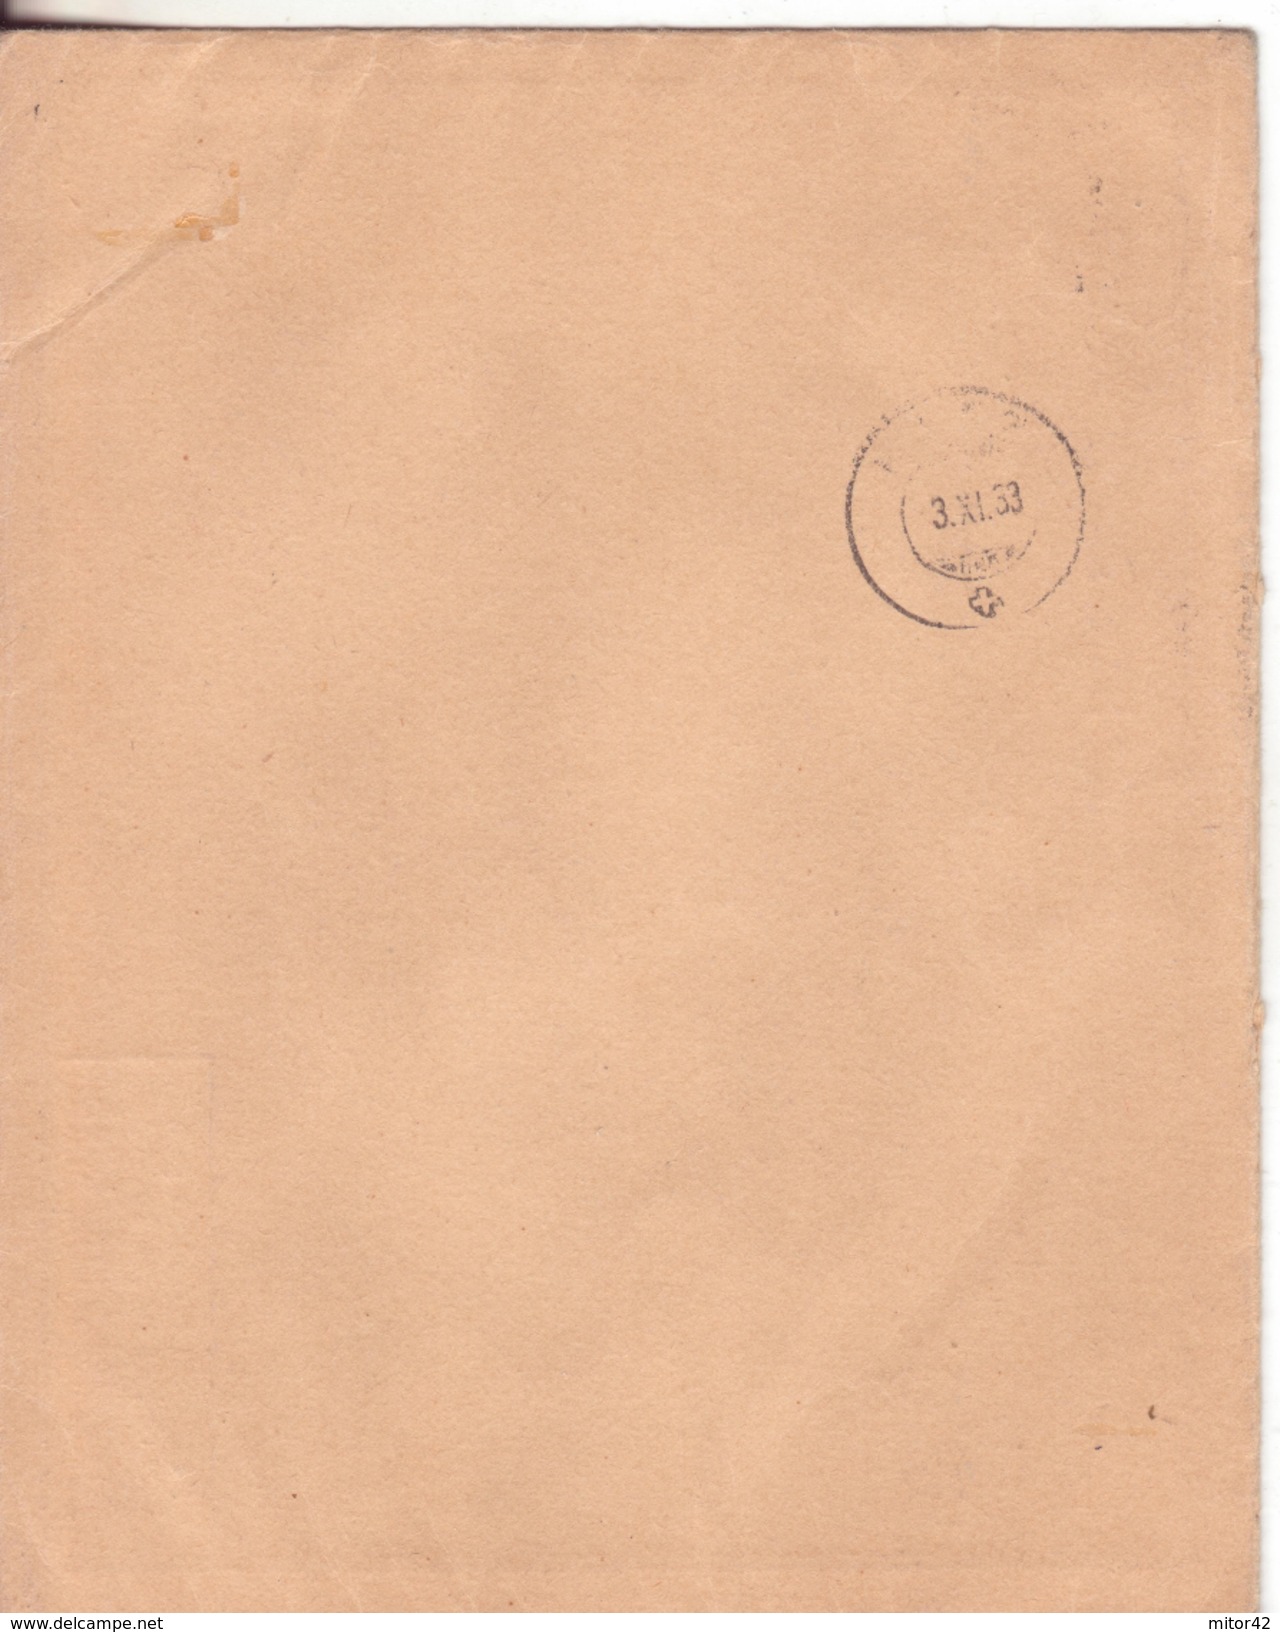 14-svizzera-francobolli Tete-beche Su Busta-v.1934 X Rafz - Tete Beche